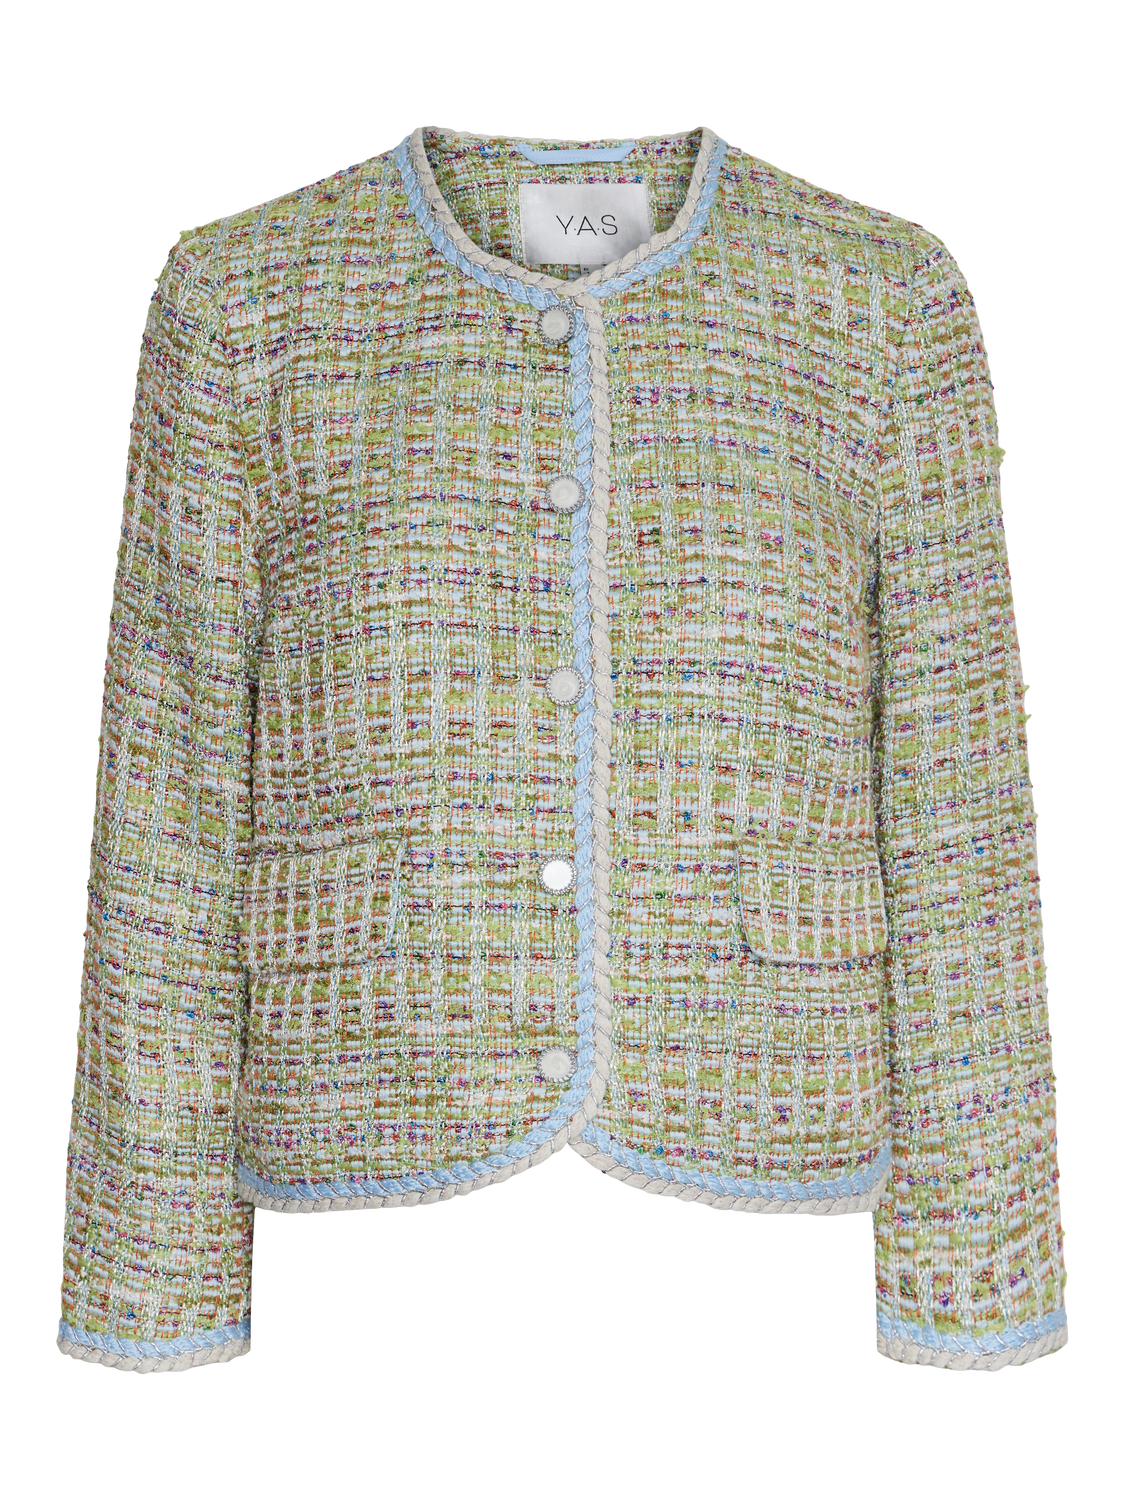 Yastweedsta 7/8 Jacket - Omphalodes Multicolour